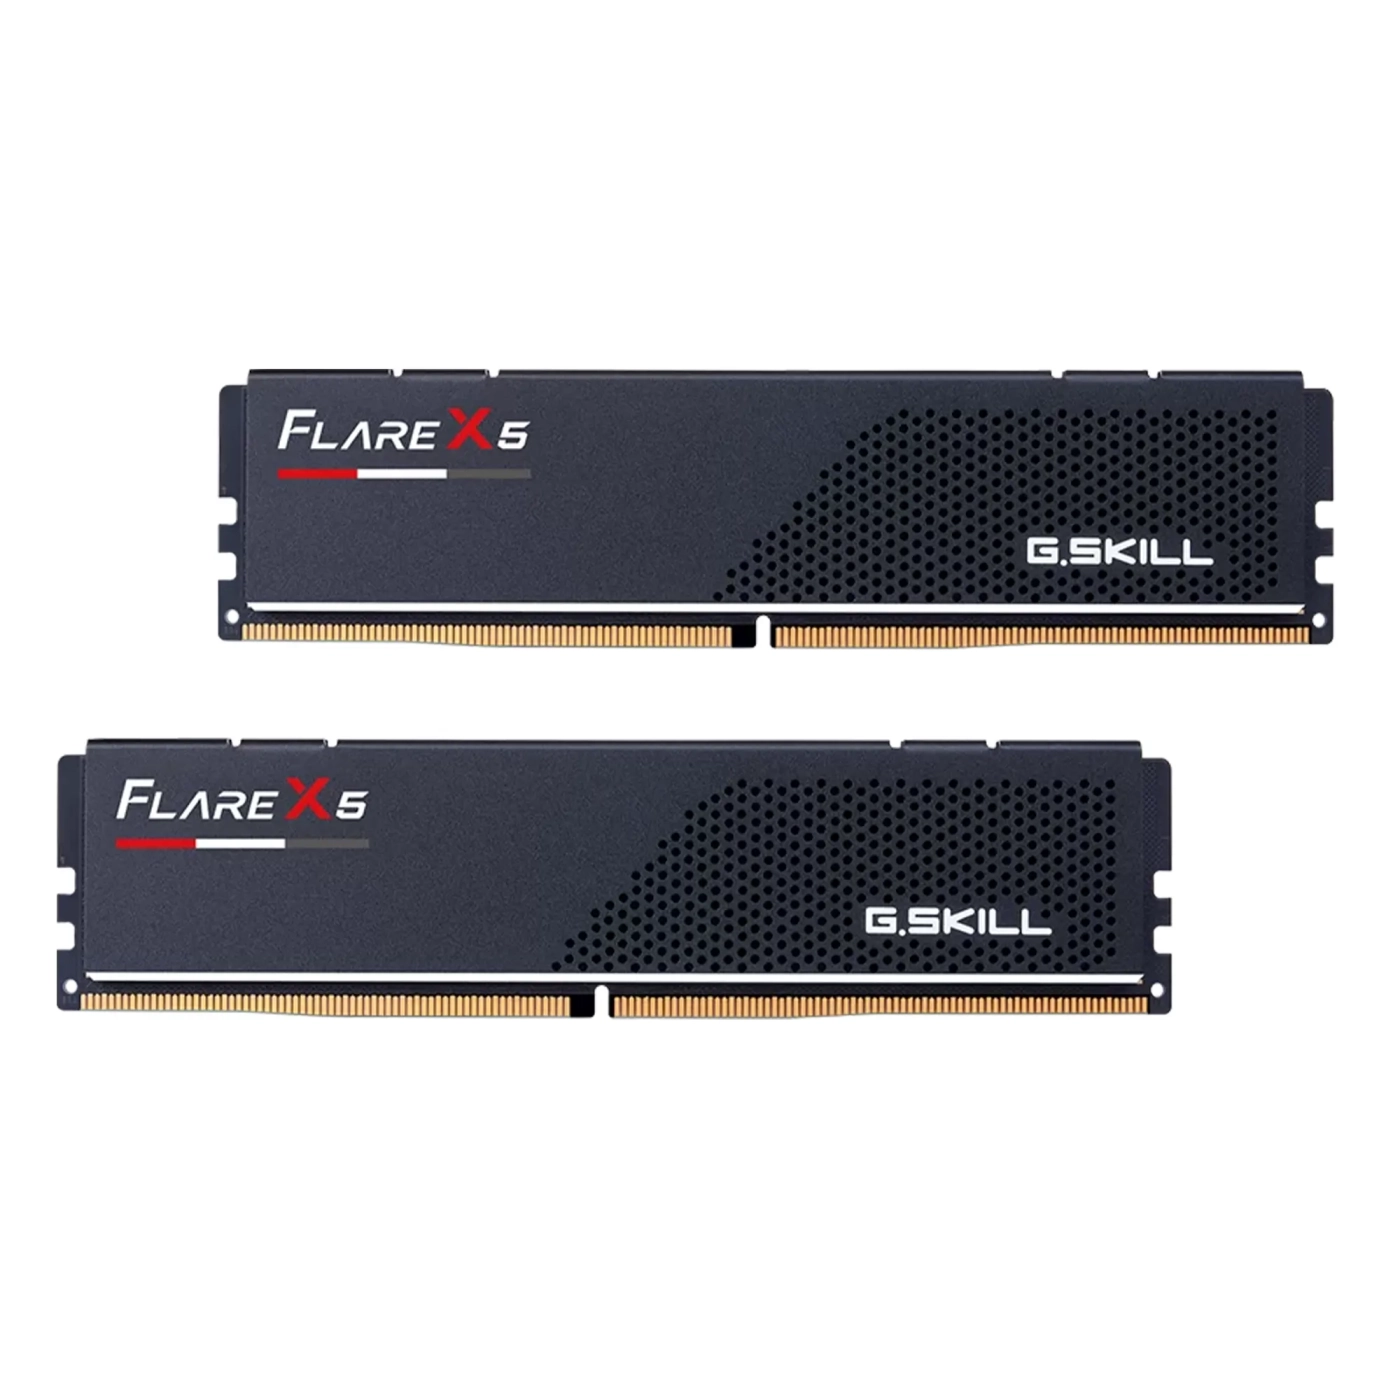 Купить Модуль памяти G.Skill Flare X5 DDR5-5200 32GB (2x16GB) CL36-36-36-83 1.20V AMD EXPO - фото 2